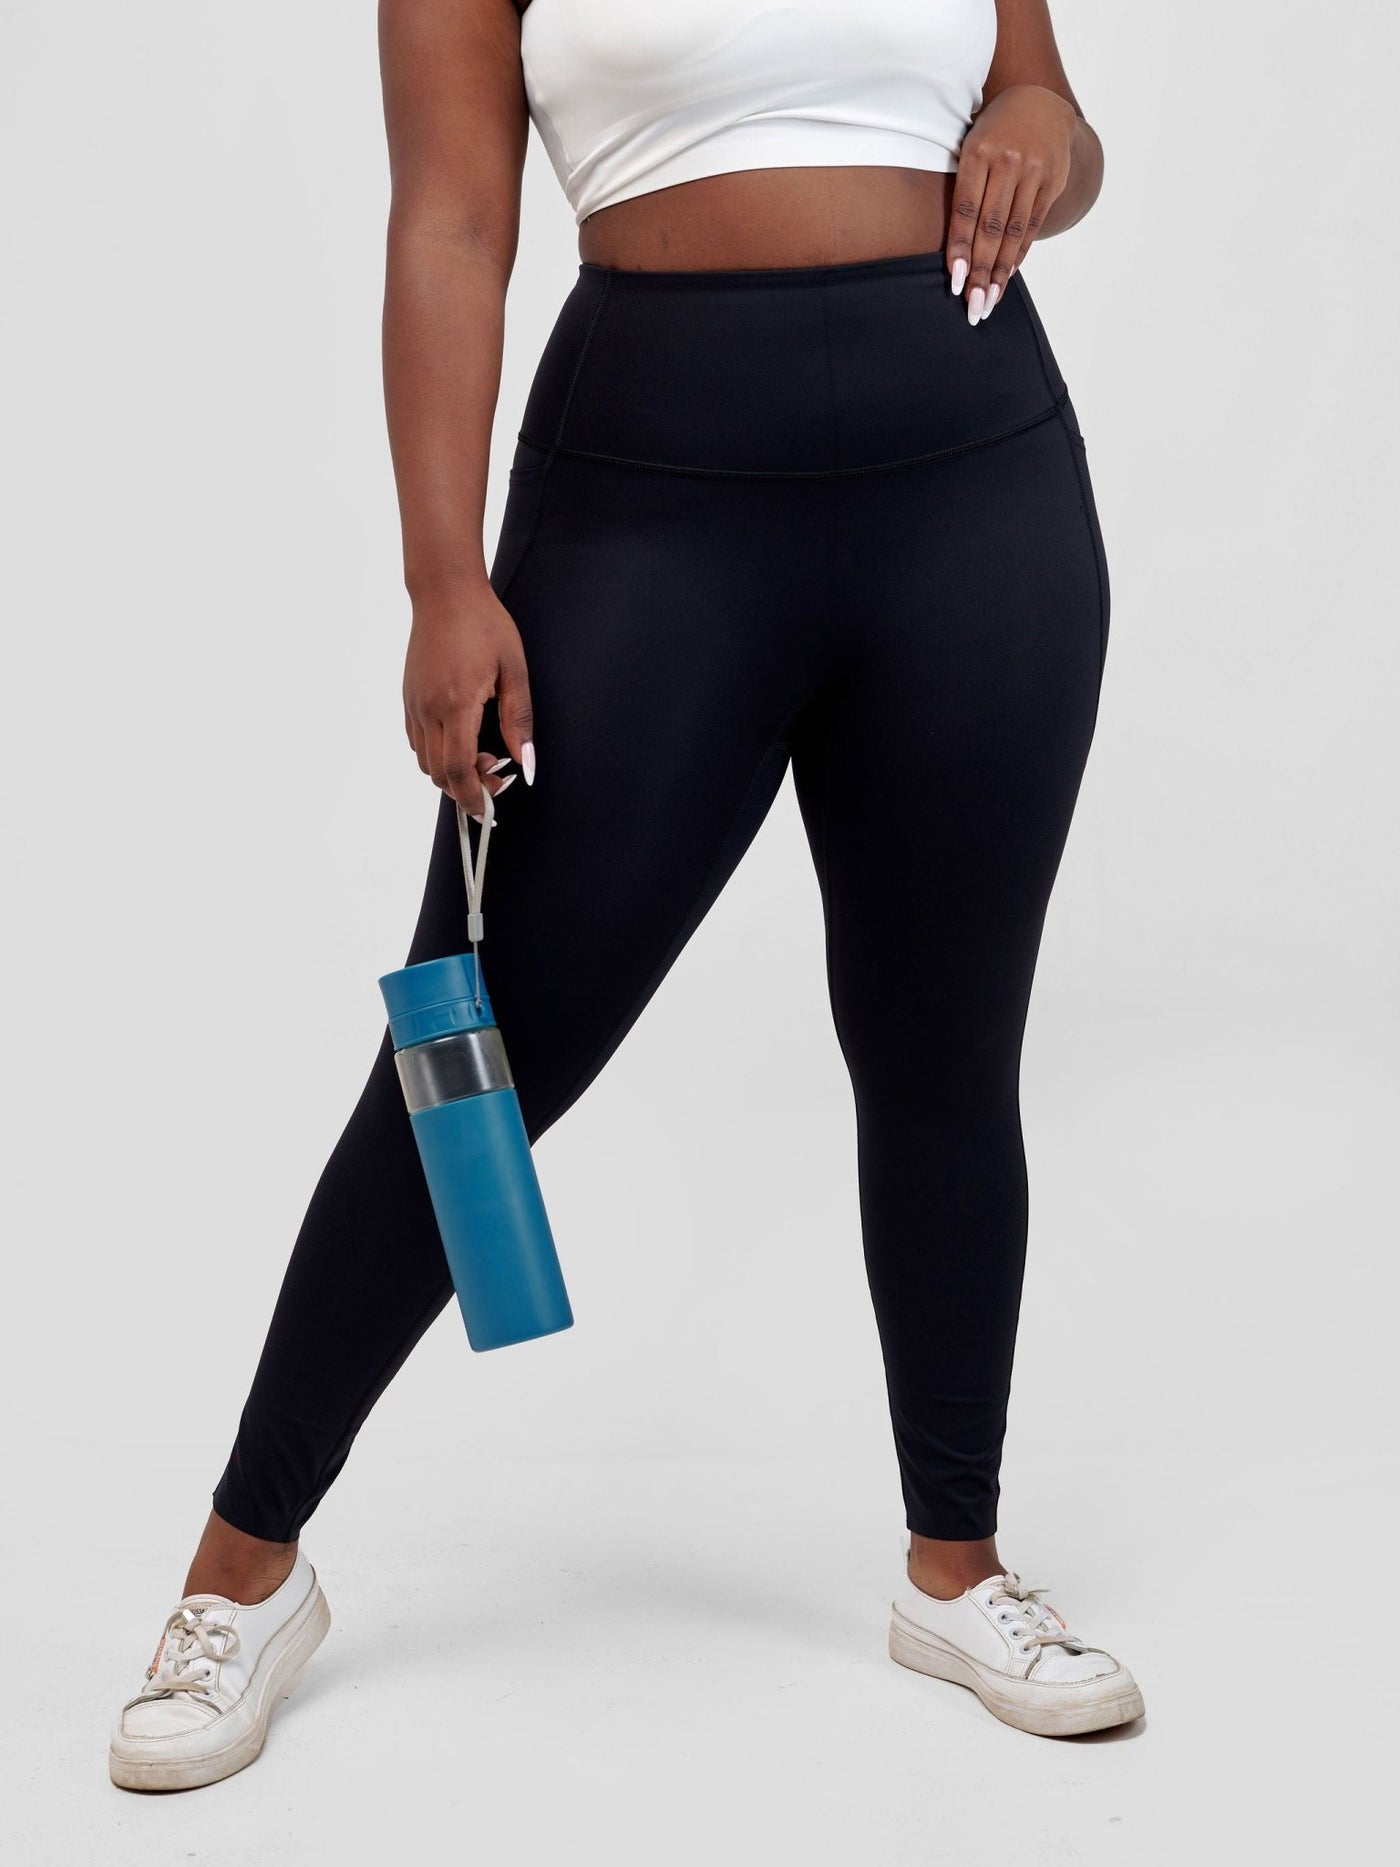 Ava Fitness Basic Double Pocket Workout Leggings-Black - Shopzetu